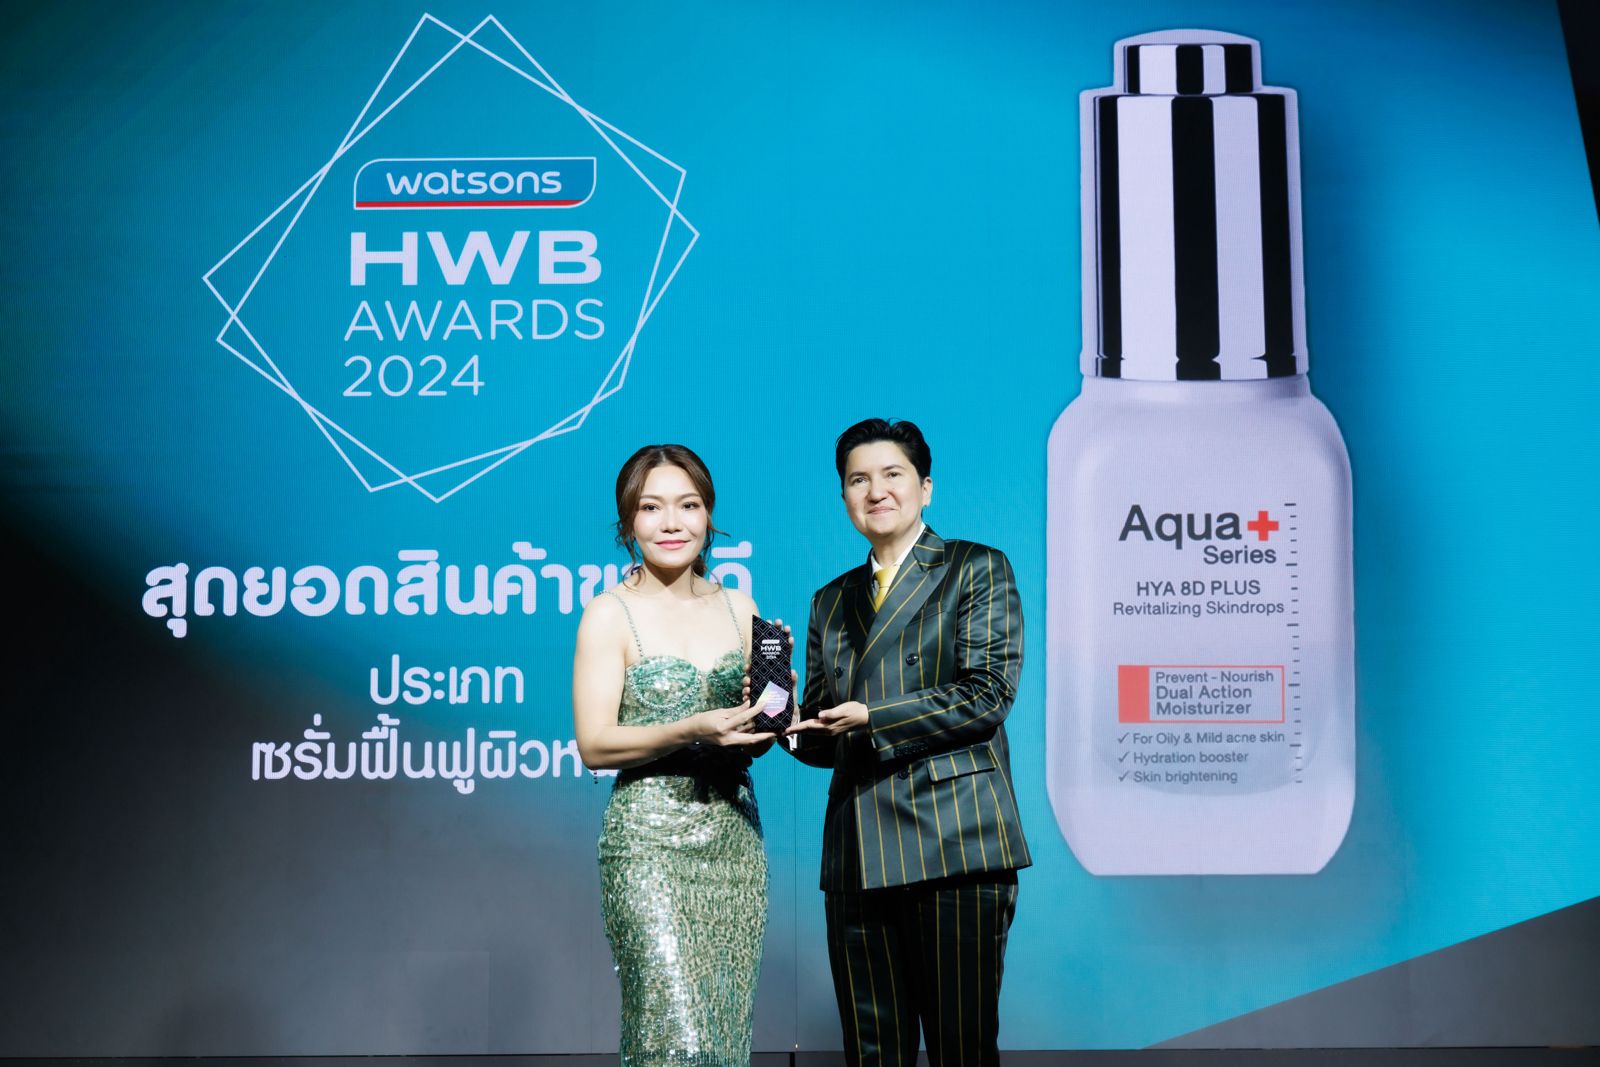 Aqua+ Series Kembali Raih Penghargaan HWB Award 2024 di Thailand